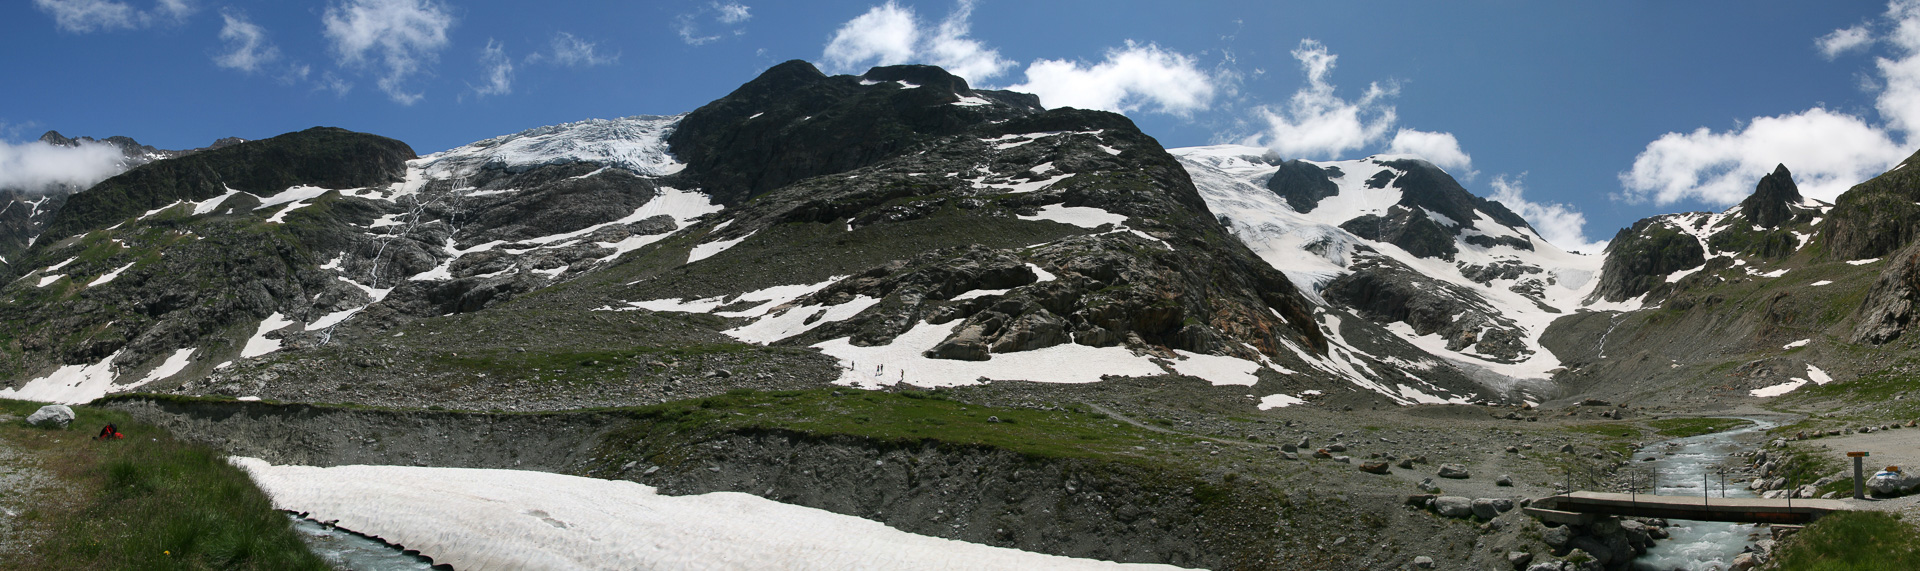 Startpunkt zum Hüttenaufstieg: Steigletscher, Aufstiegsweg und Vorder Tierberg.